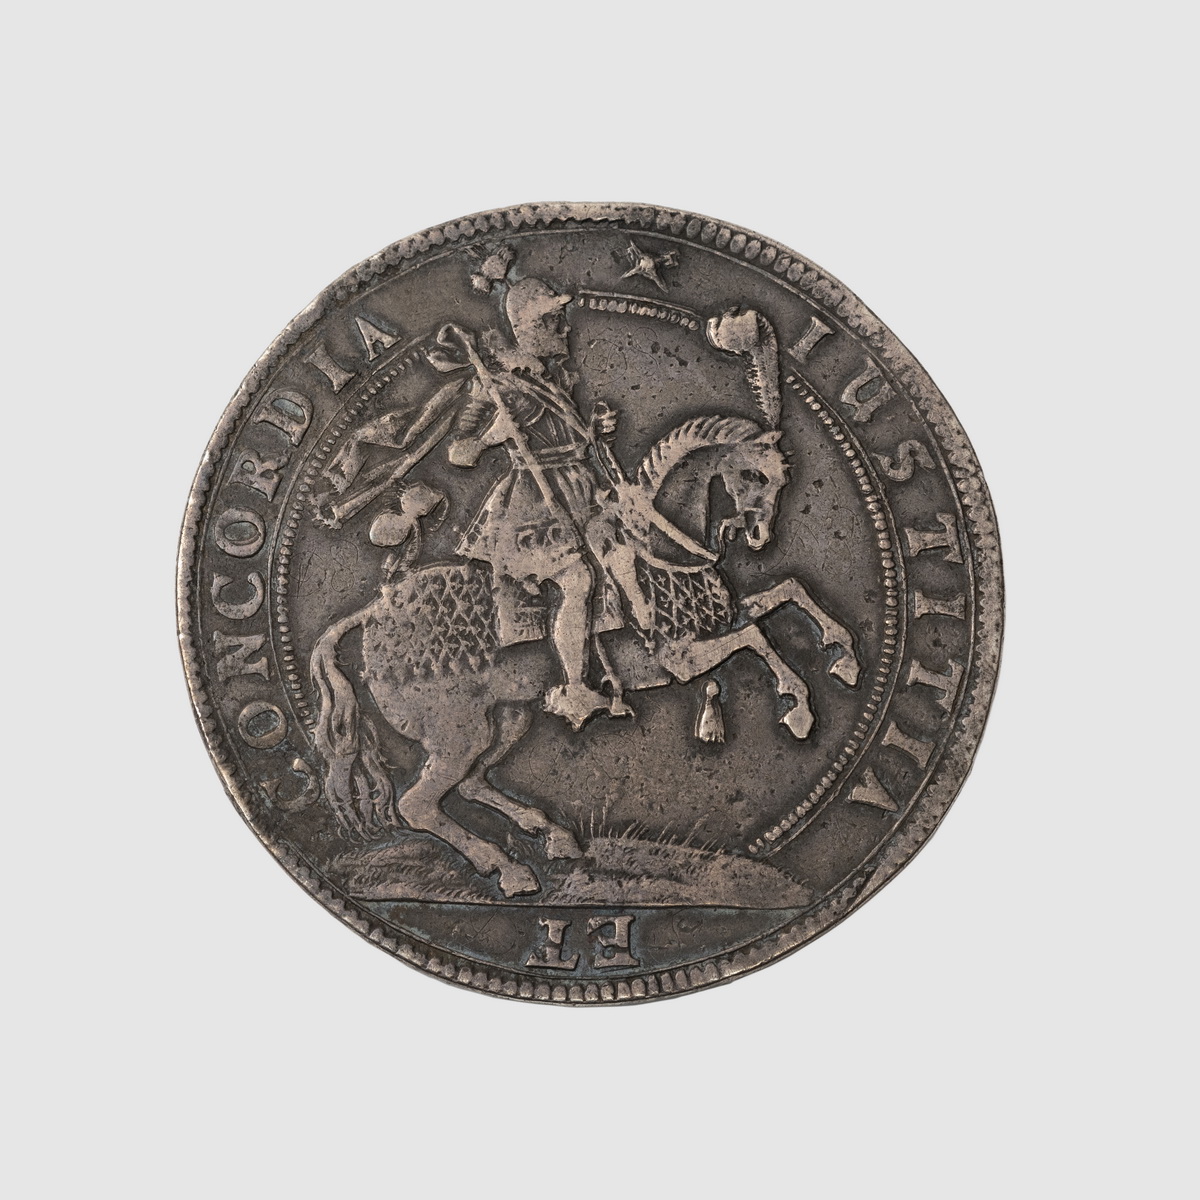 Münze geprägt mit Reiter auf Pferd